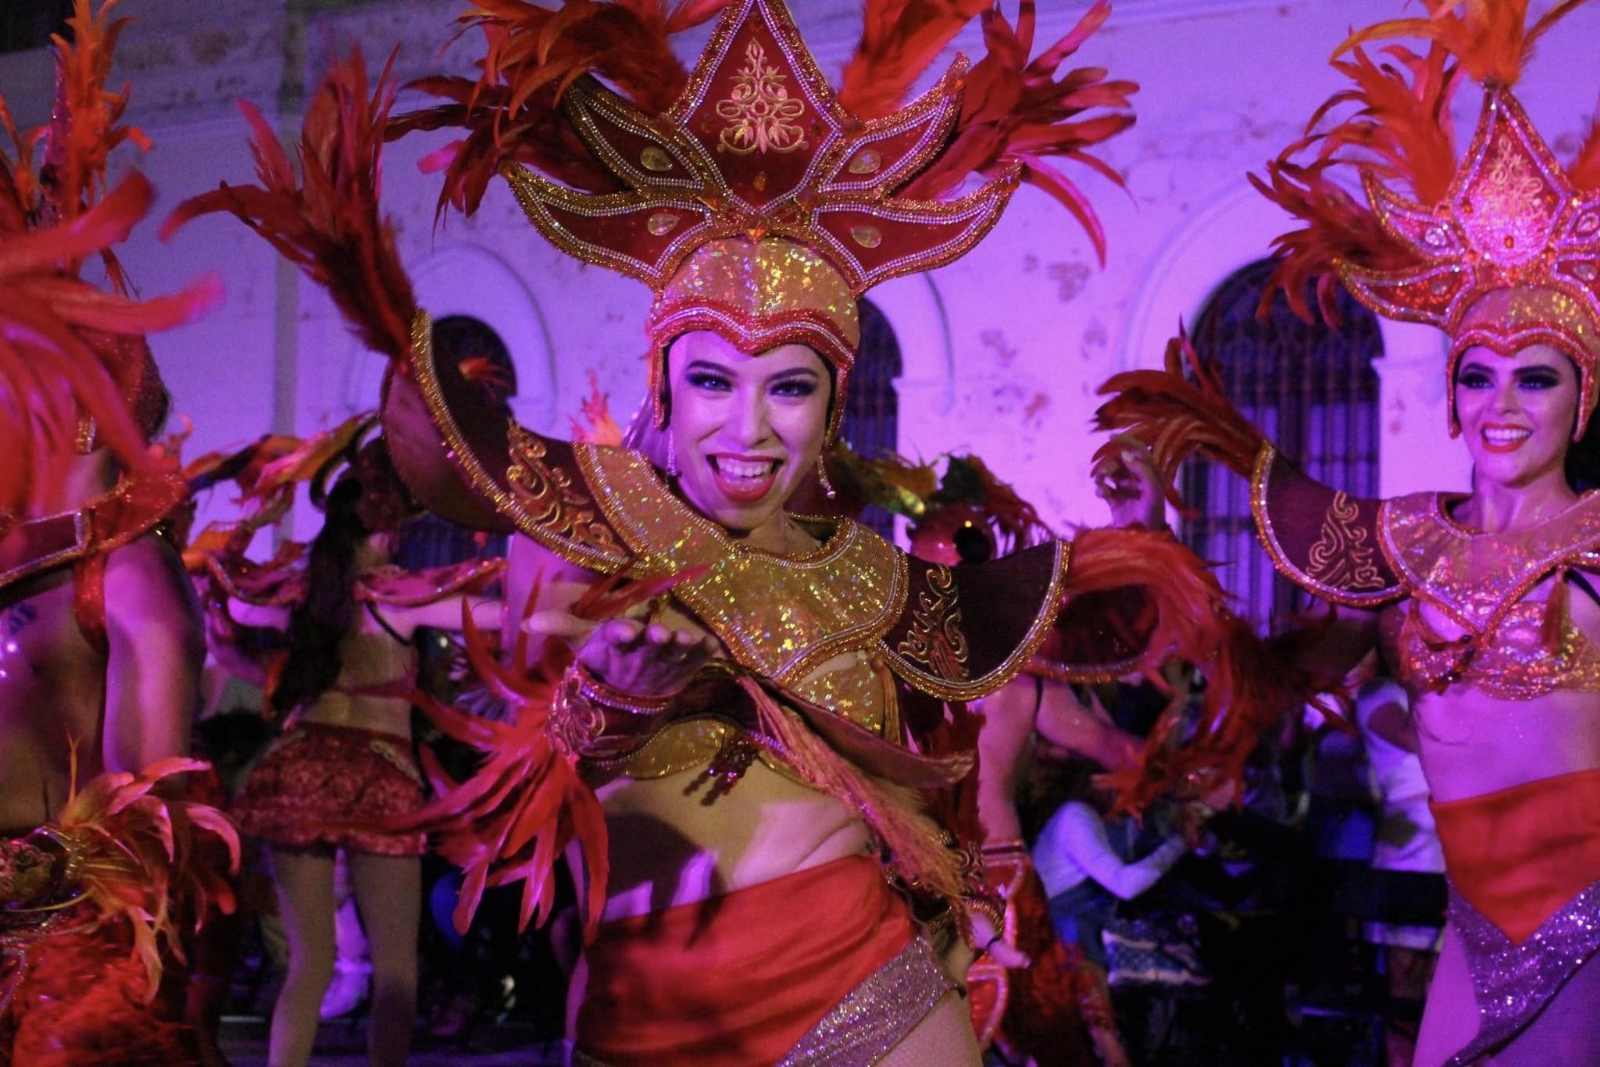 El Carnaval de Mérida y el de Progreso se han vuelto los más importantes de Yucatán